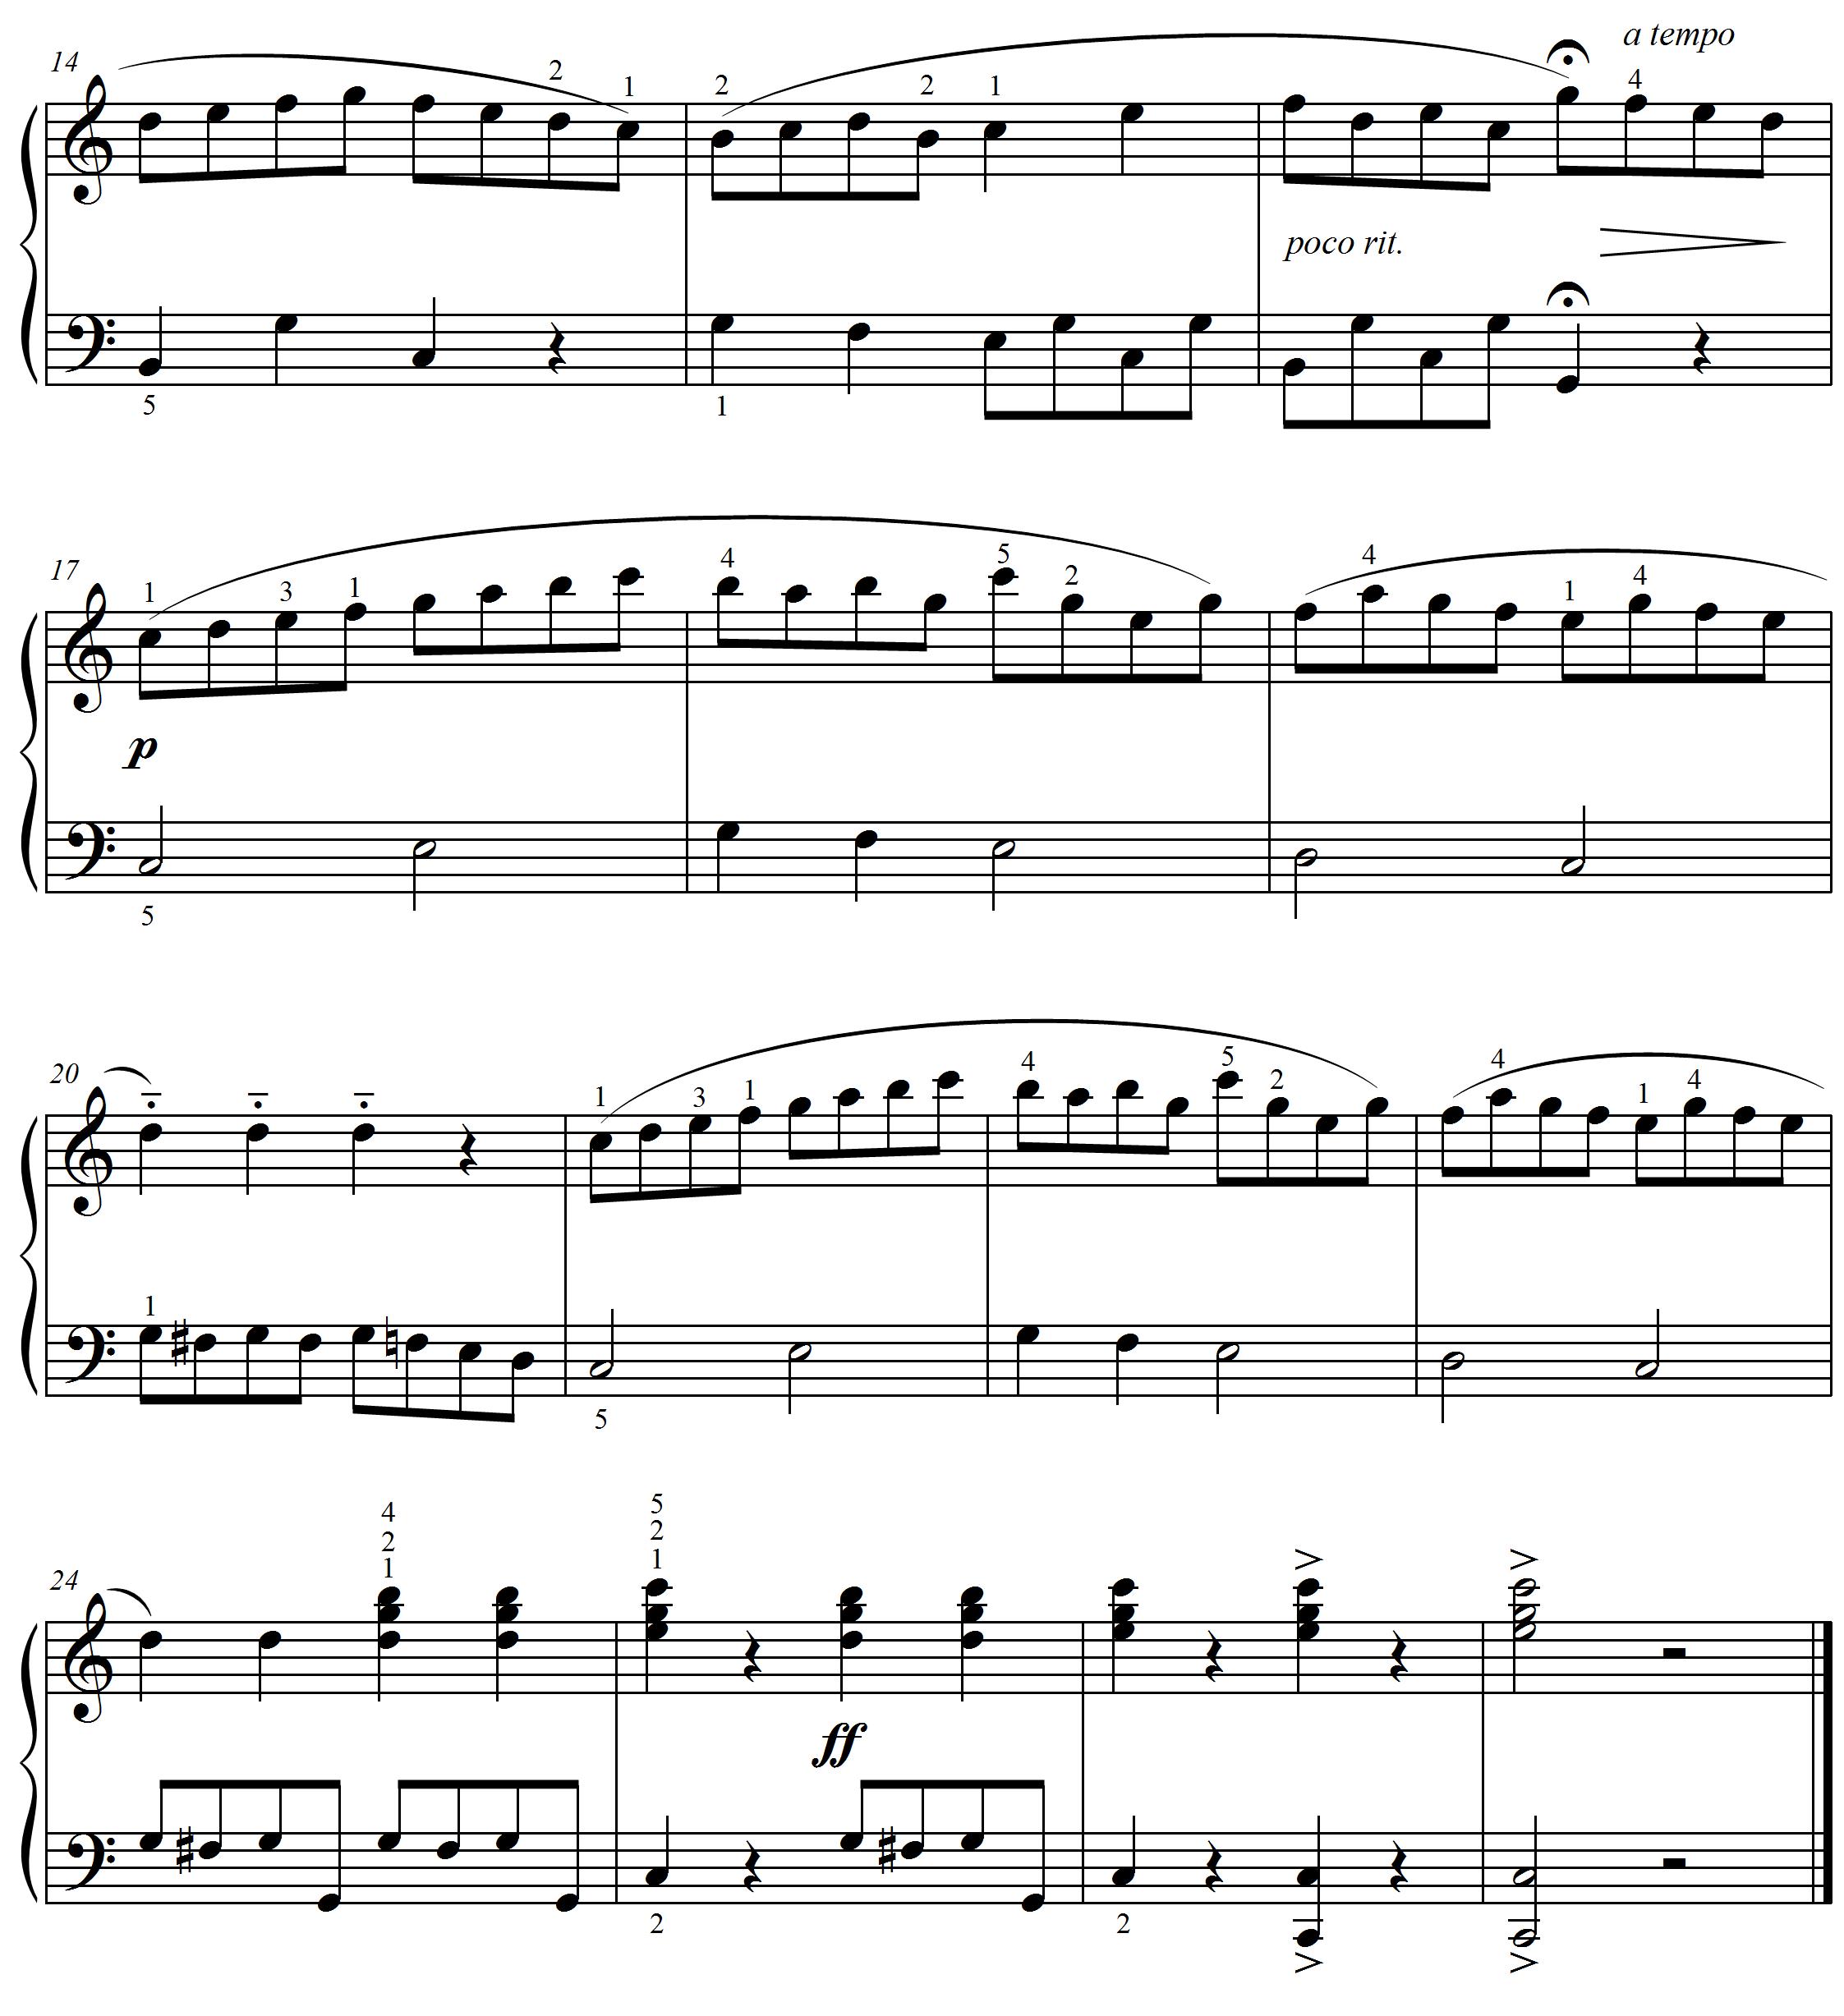 sonatina score page 2